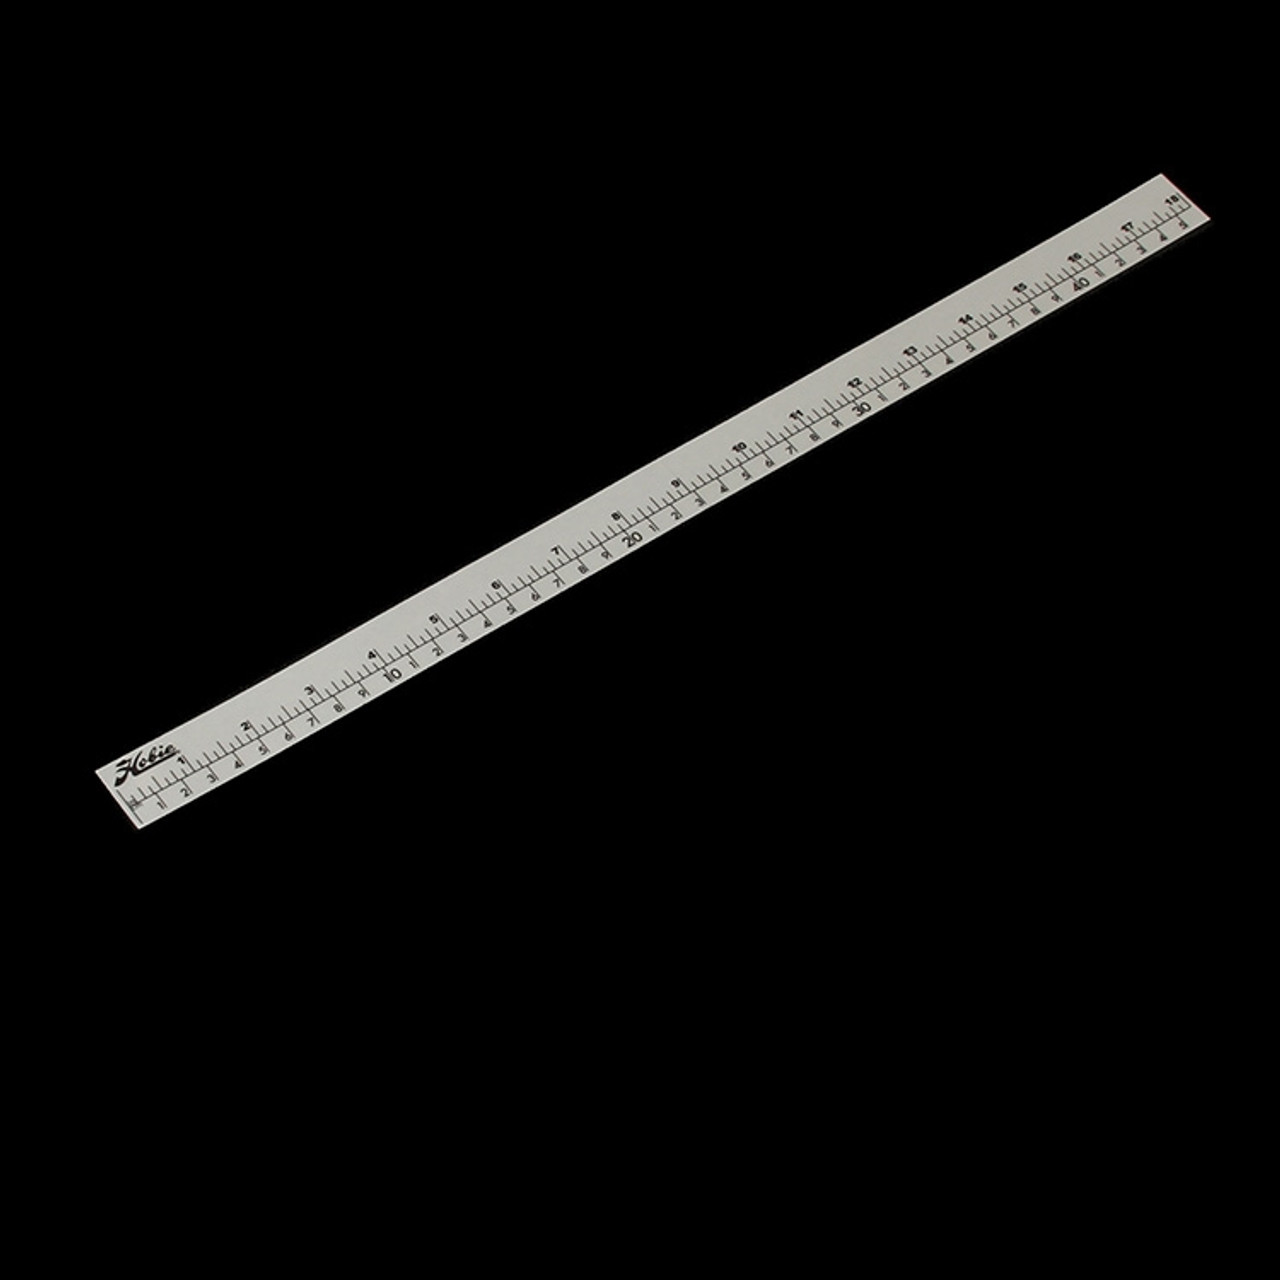 Hobie Pro Angler Ruler Decal - 84504301